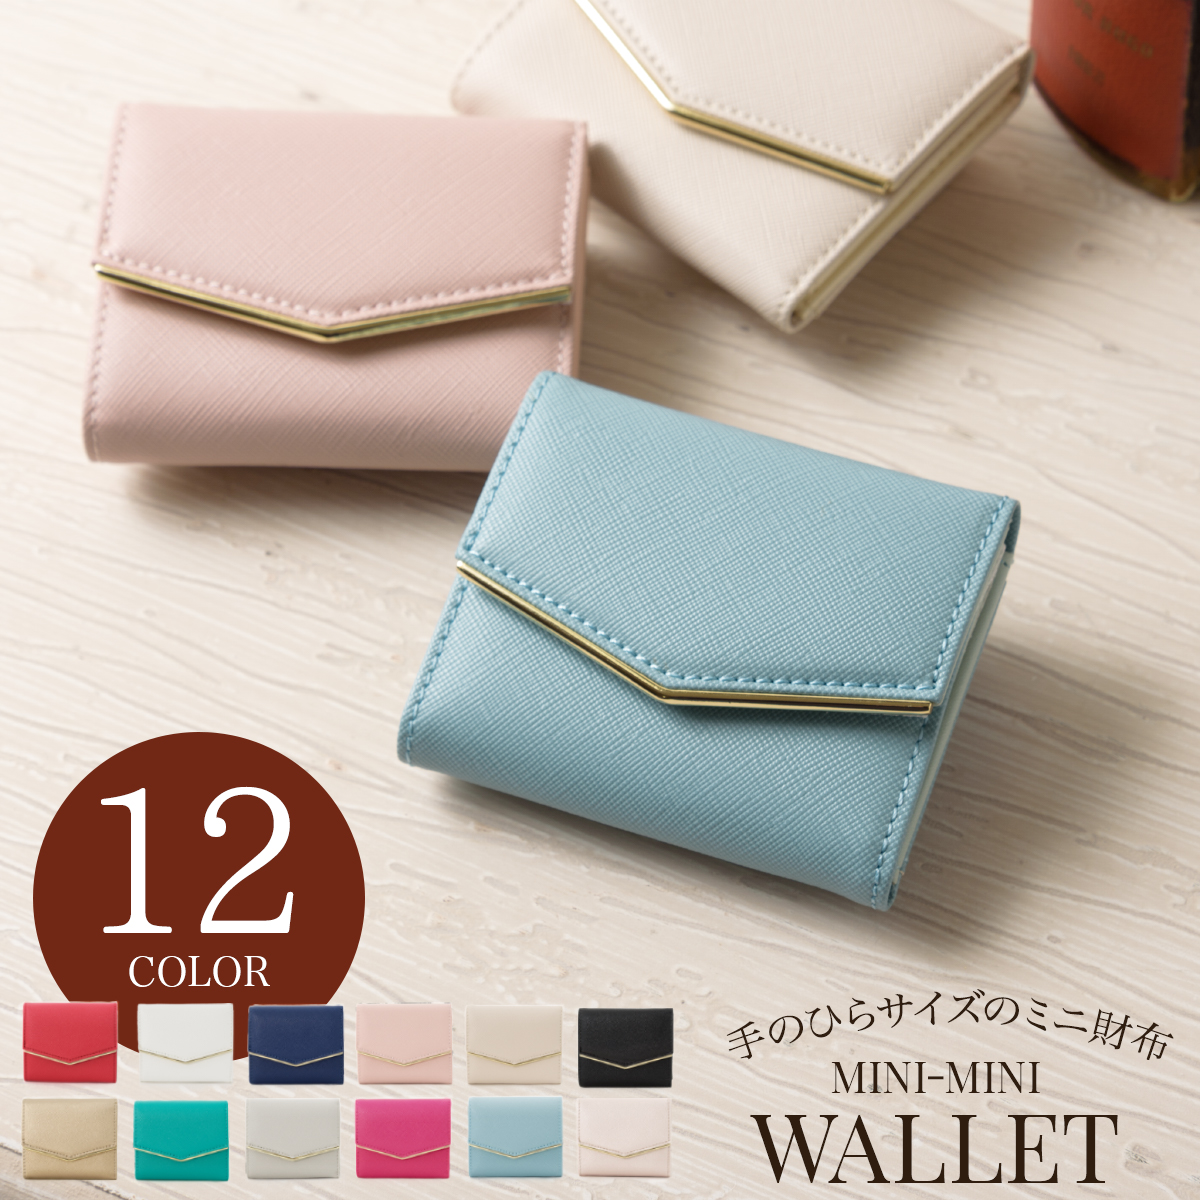 ポケットに入れて携帯できる小型のお財布、1万円で買えるおすすめを教えて！